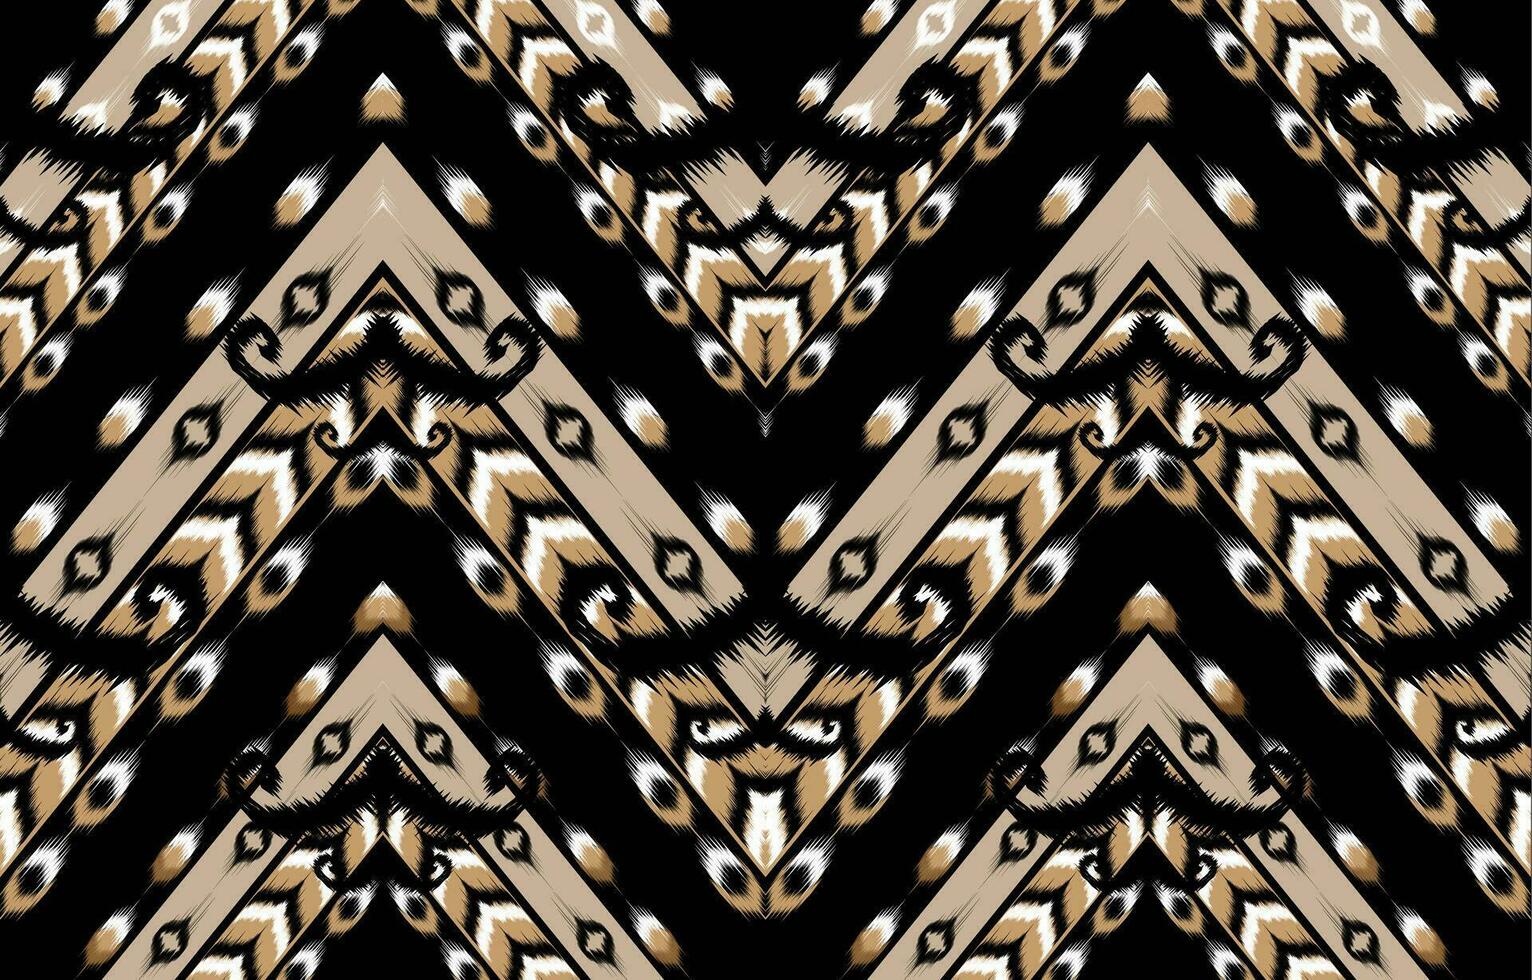 Ikat Blumen- Paisley Stickerei auf schwarz hintergrund.geometrisch ethnisch orientalisch Muster traditionell. aztekisch Stil abstrakt Vektor illustration.design zum textur, stoff, kleidung, verpackung, dekoration, teppich